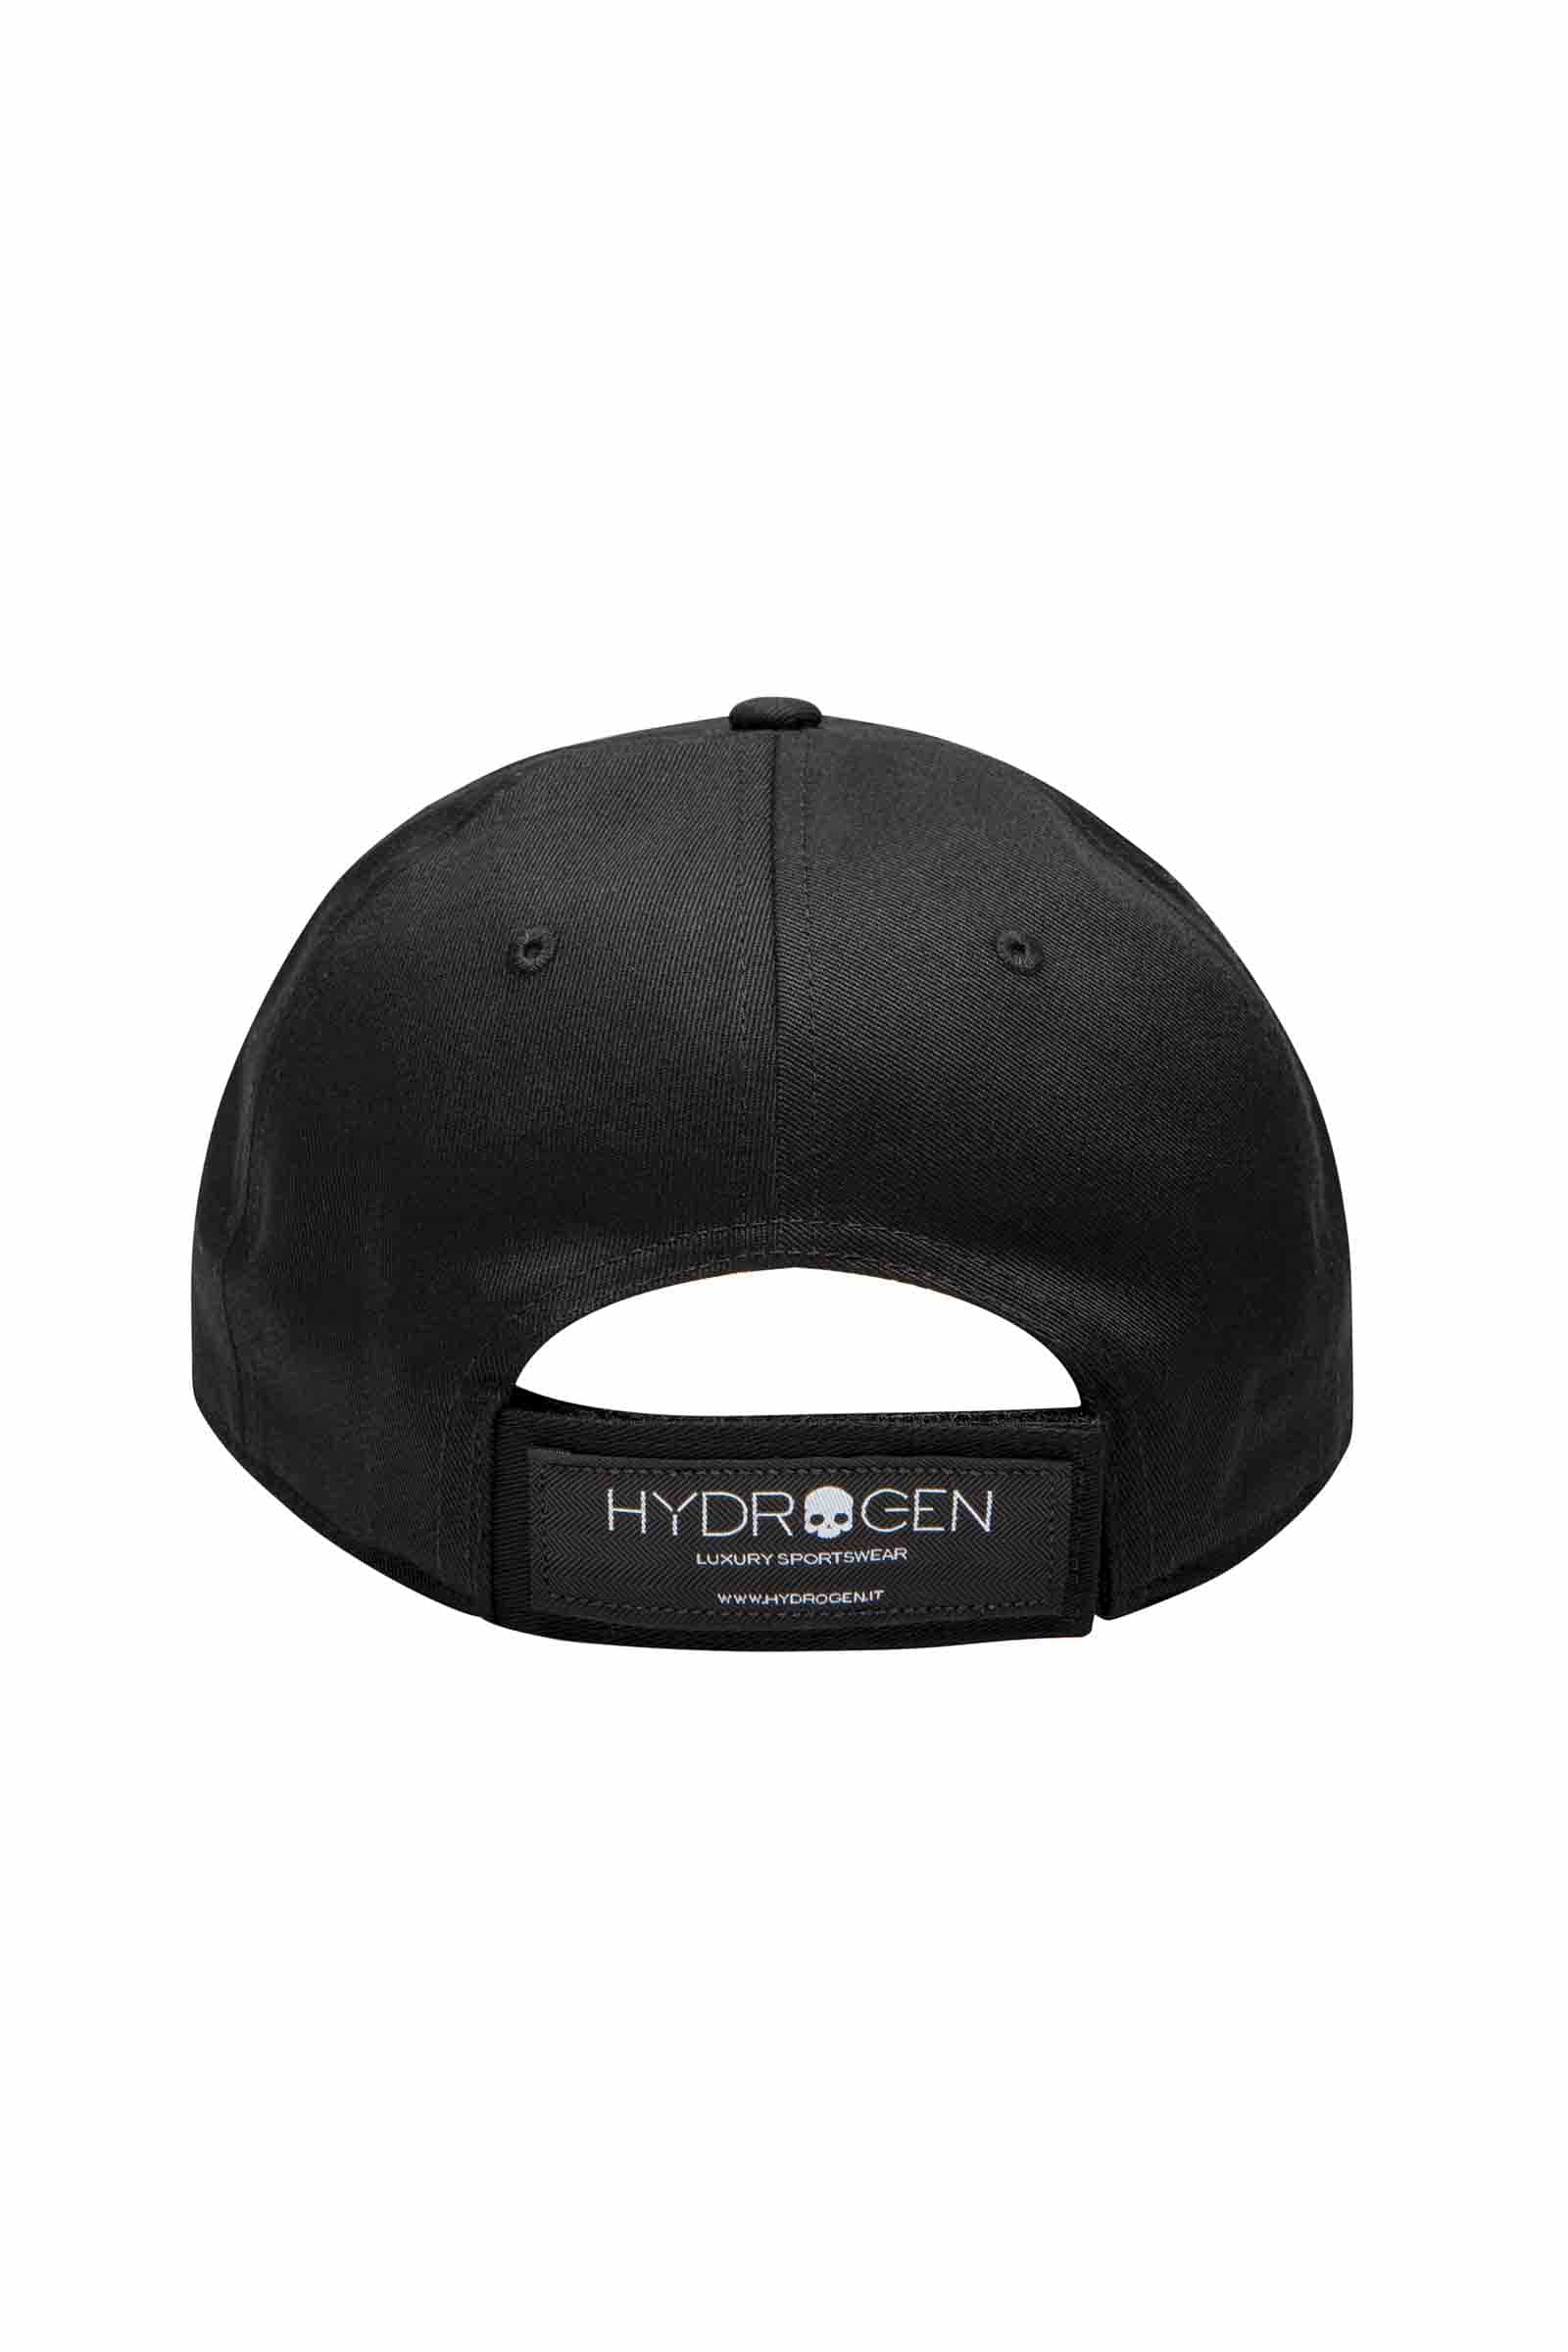 SKULL CAP - BLACK - Hydrogen - Luxury Sportwear